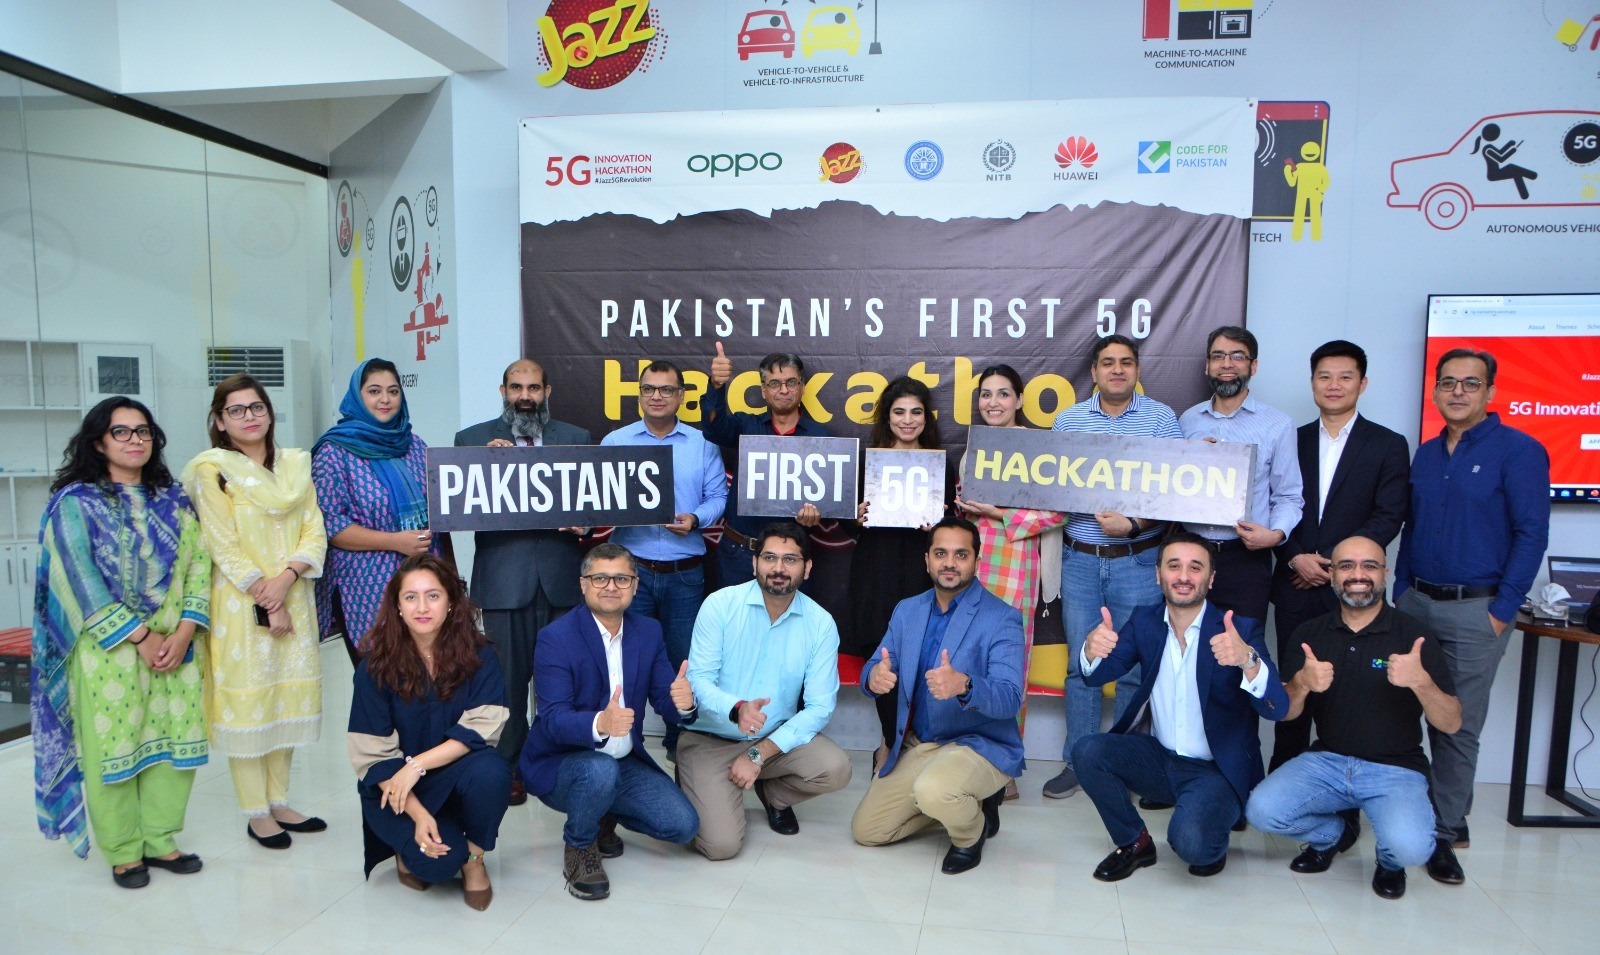 جاز-NUST 5G انوویشن لیب NITB اور کوڈ فار پاکستان کے ساتھ شراکت میں پاکستان کی پہلی 5G ہیکاتھون کی میزبانی کر رہی ہے